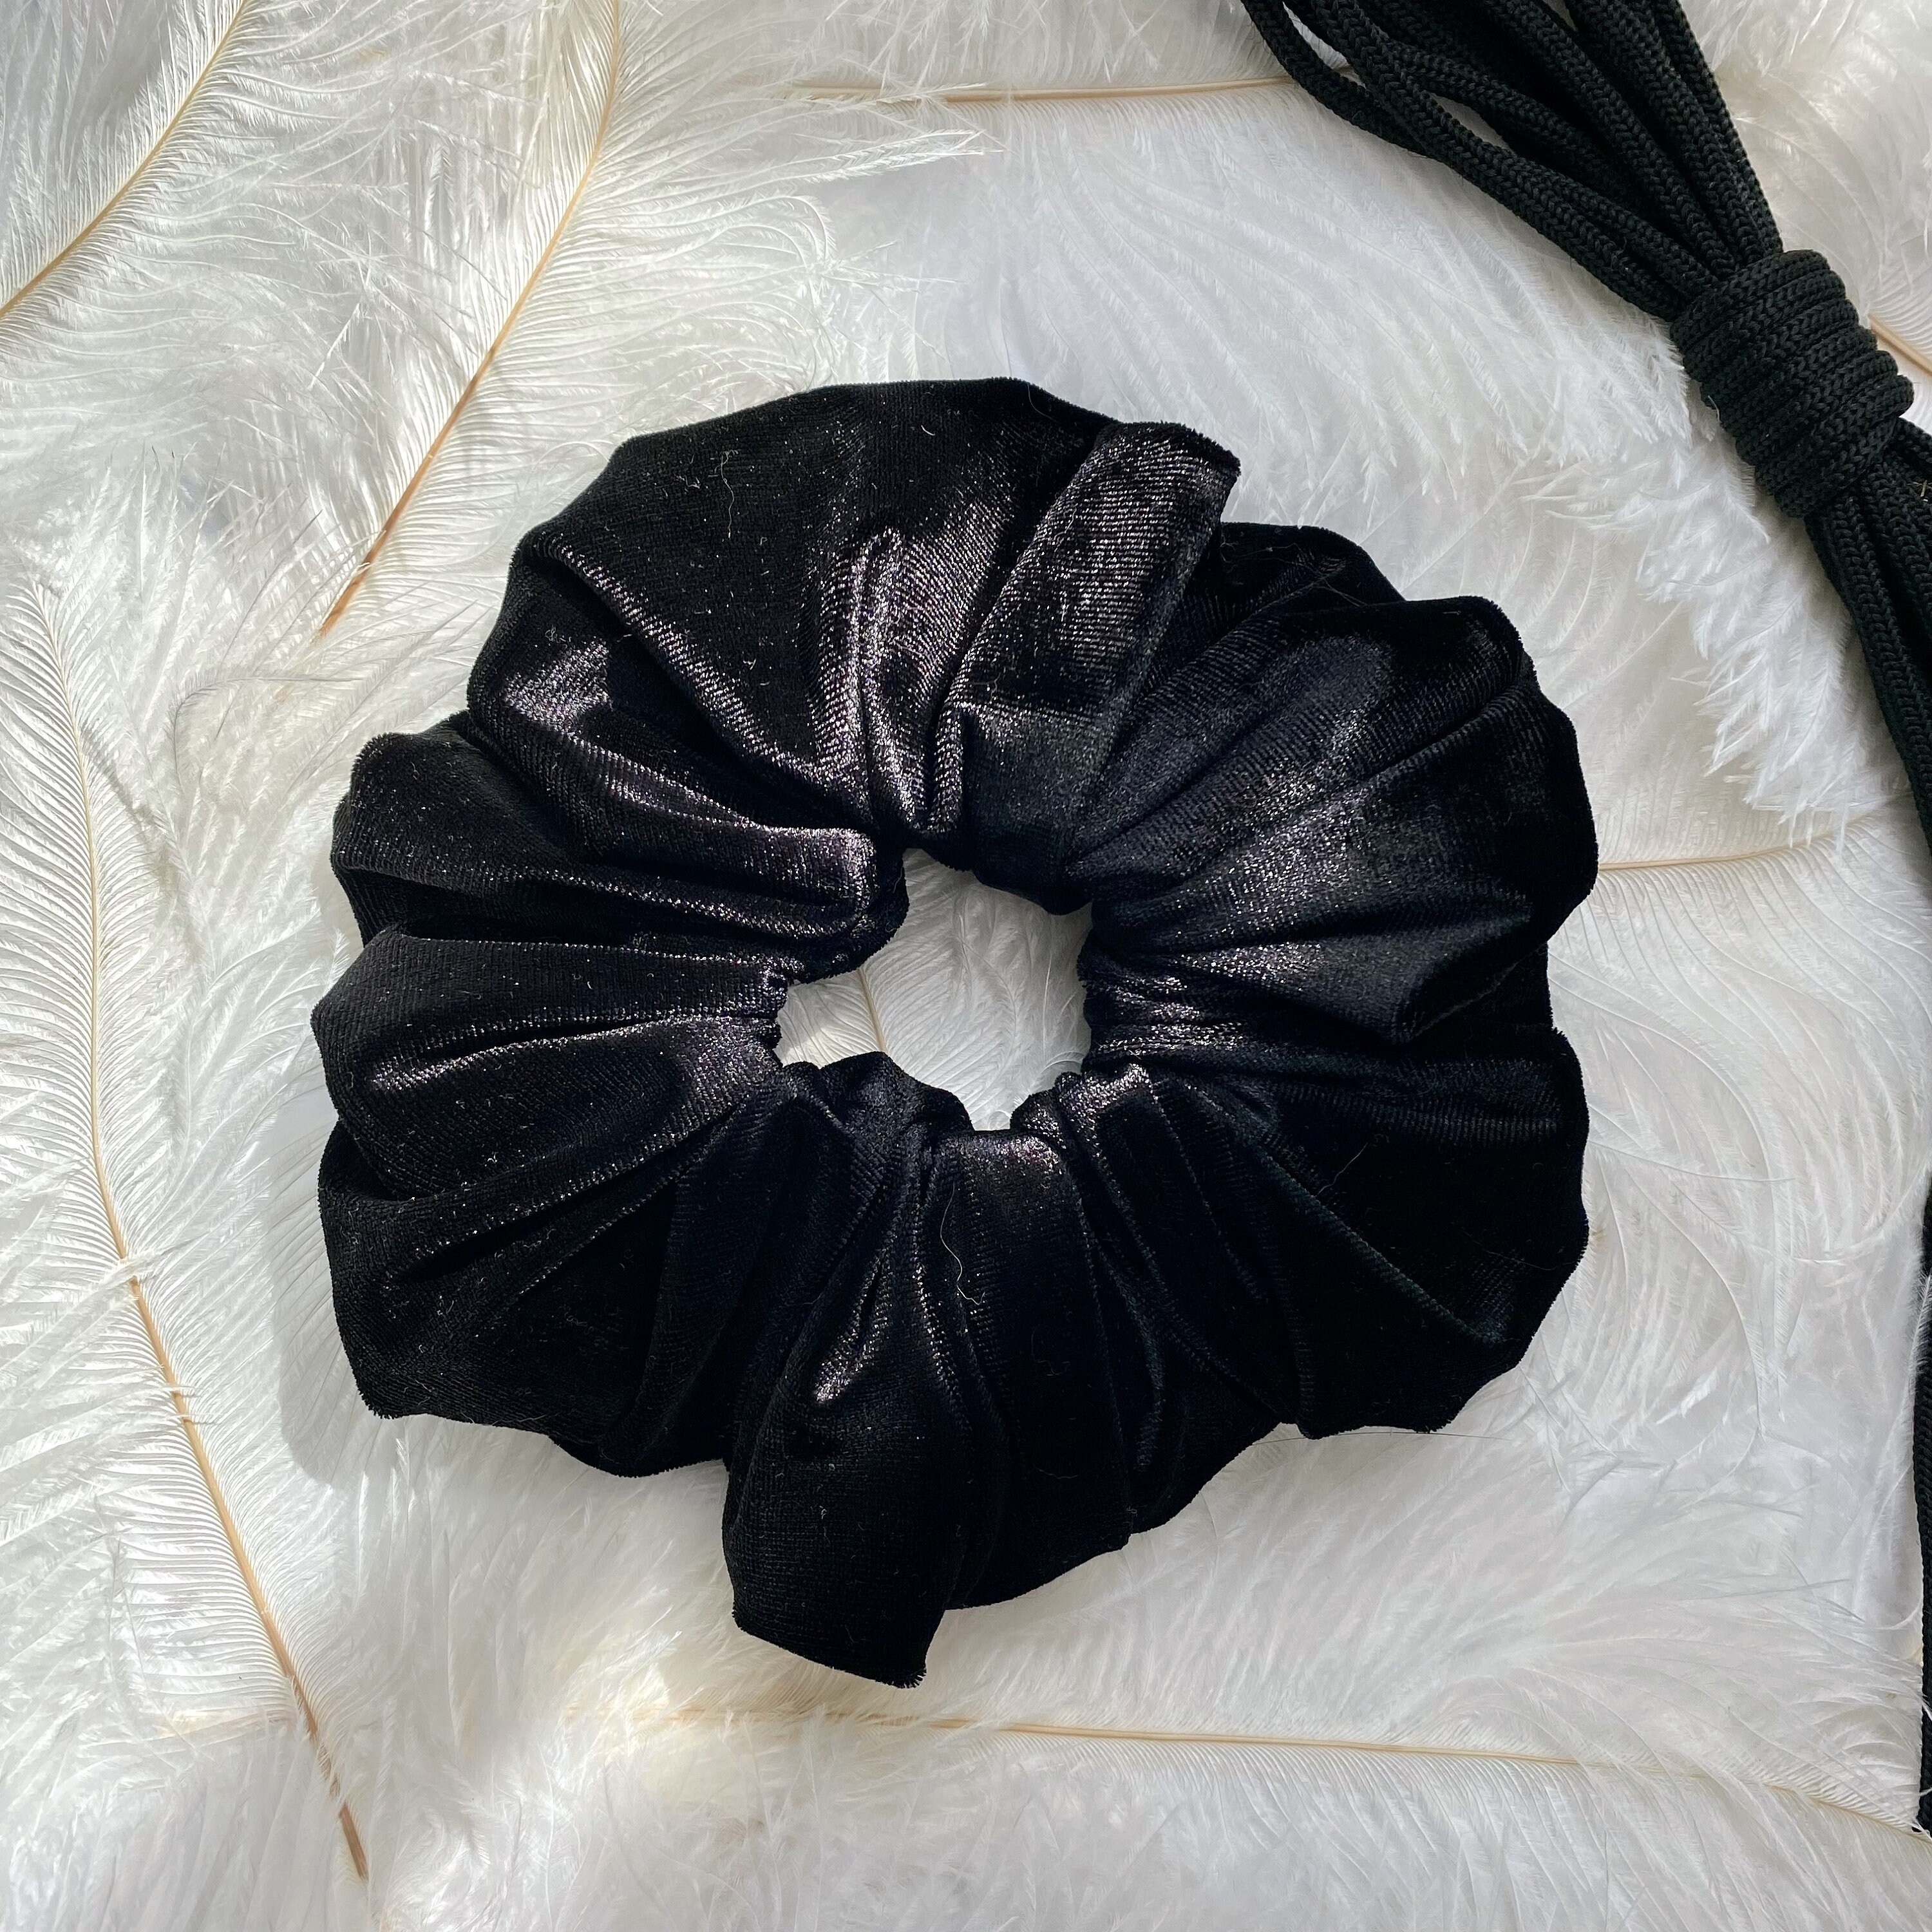 Buy Black Velvet Scrunchie. Plump Soft Black Velvet Hair Accessory